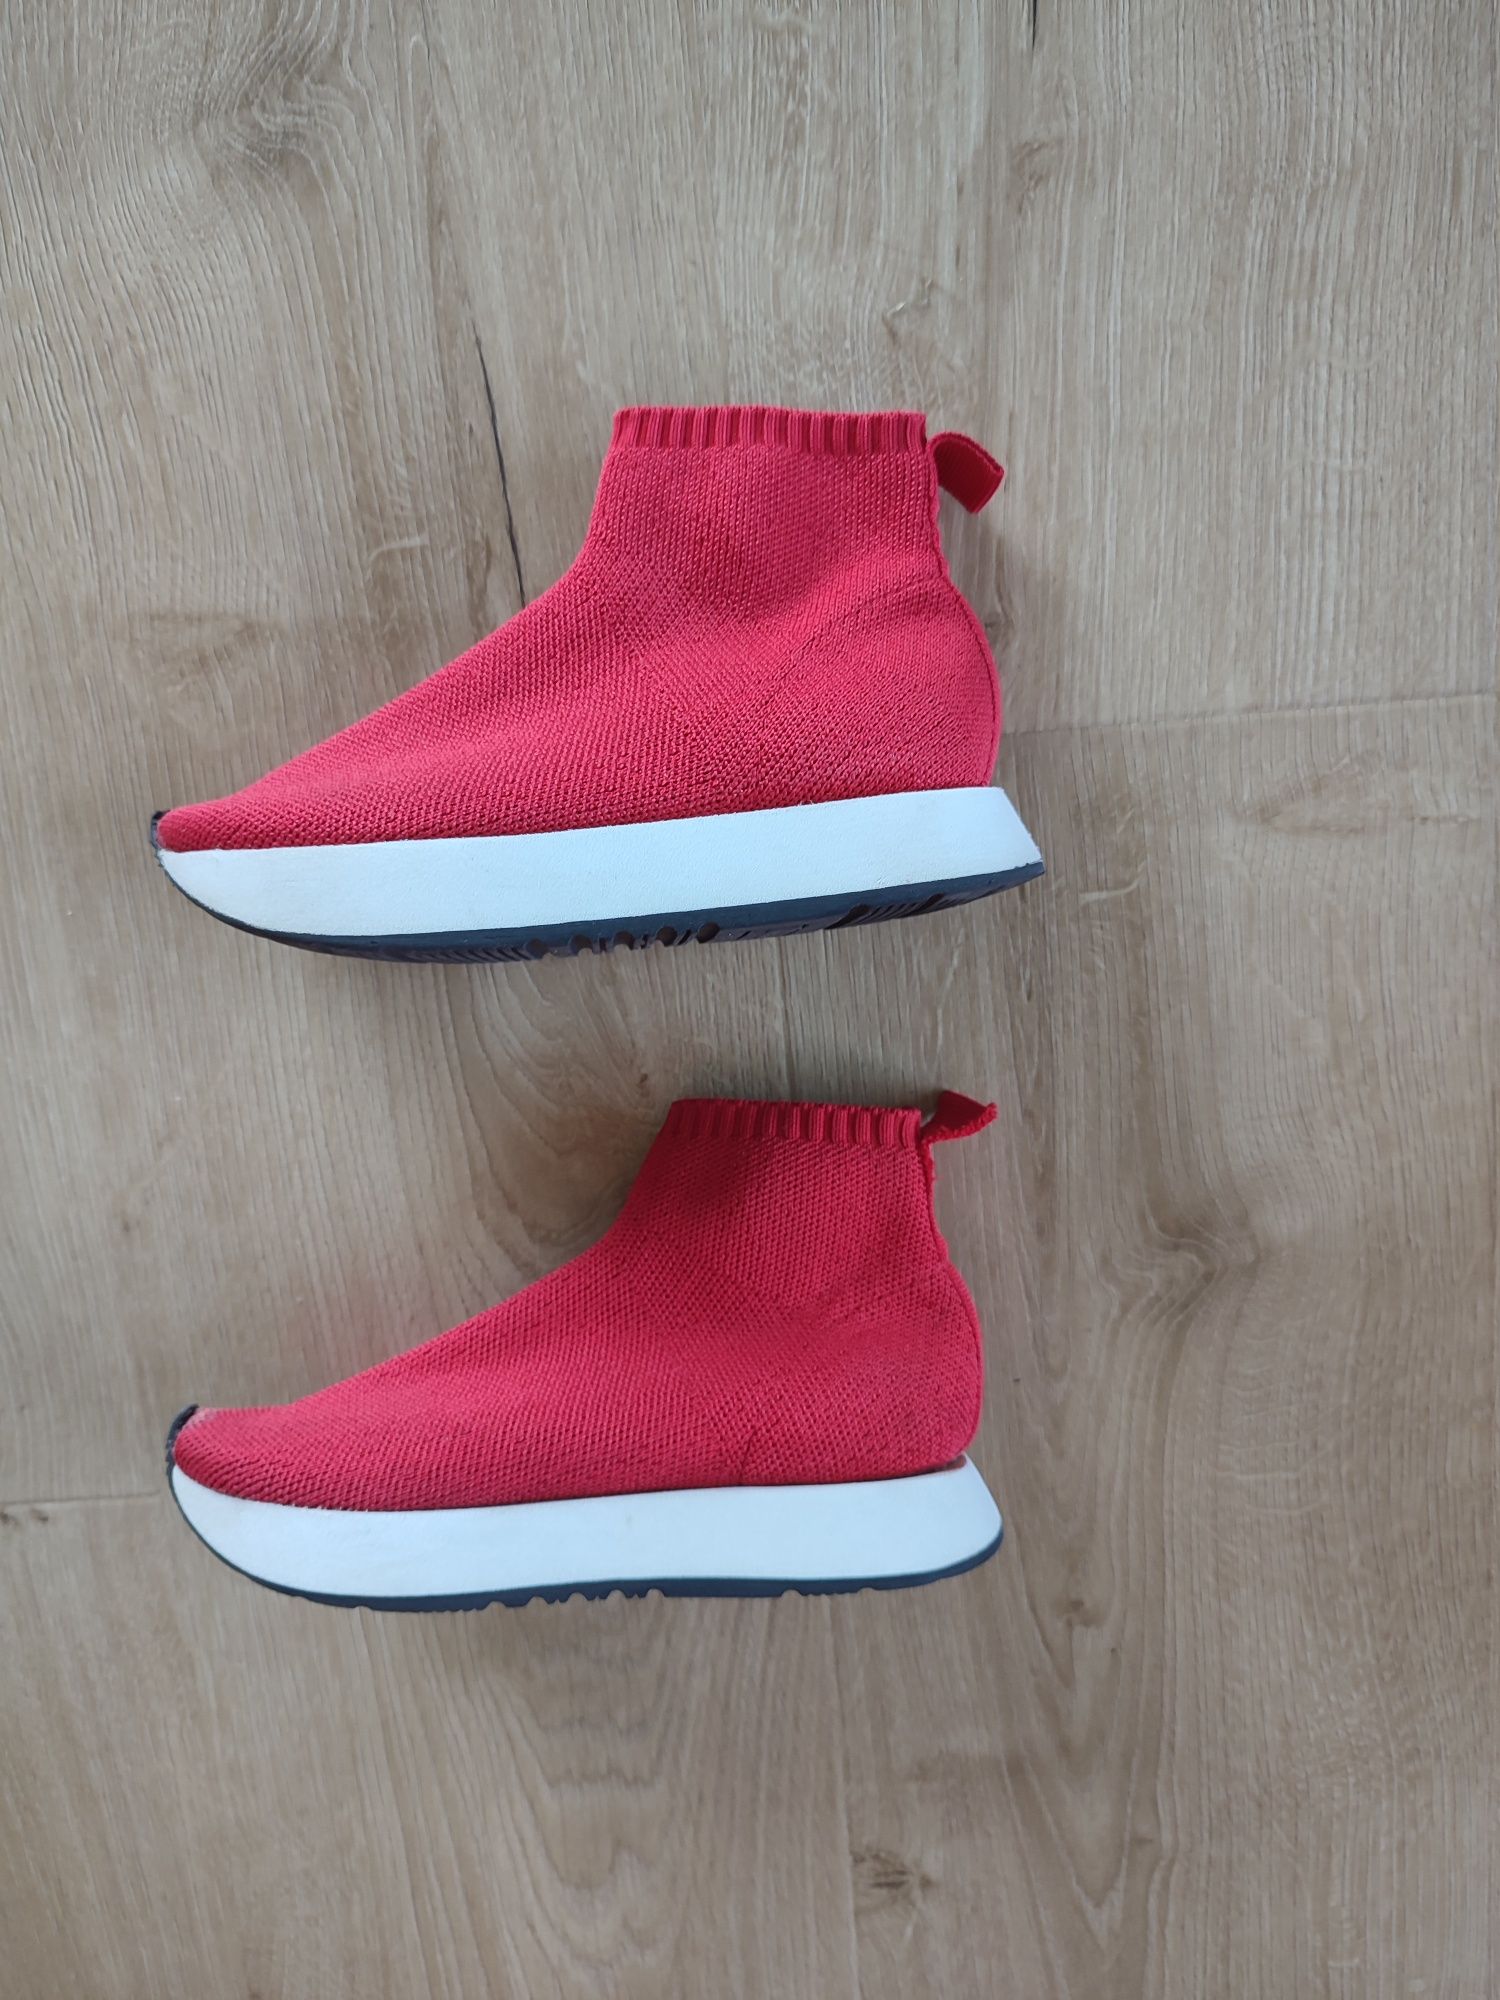 Adidasy Zara Kids 30 za kostkę wciągane dziewczęce czerwone